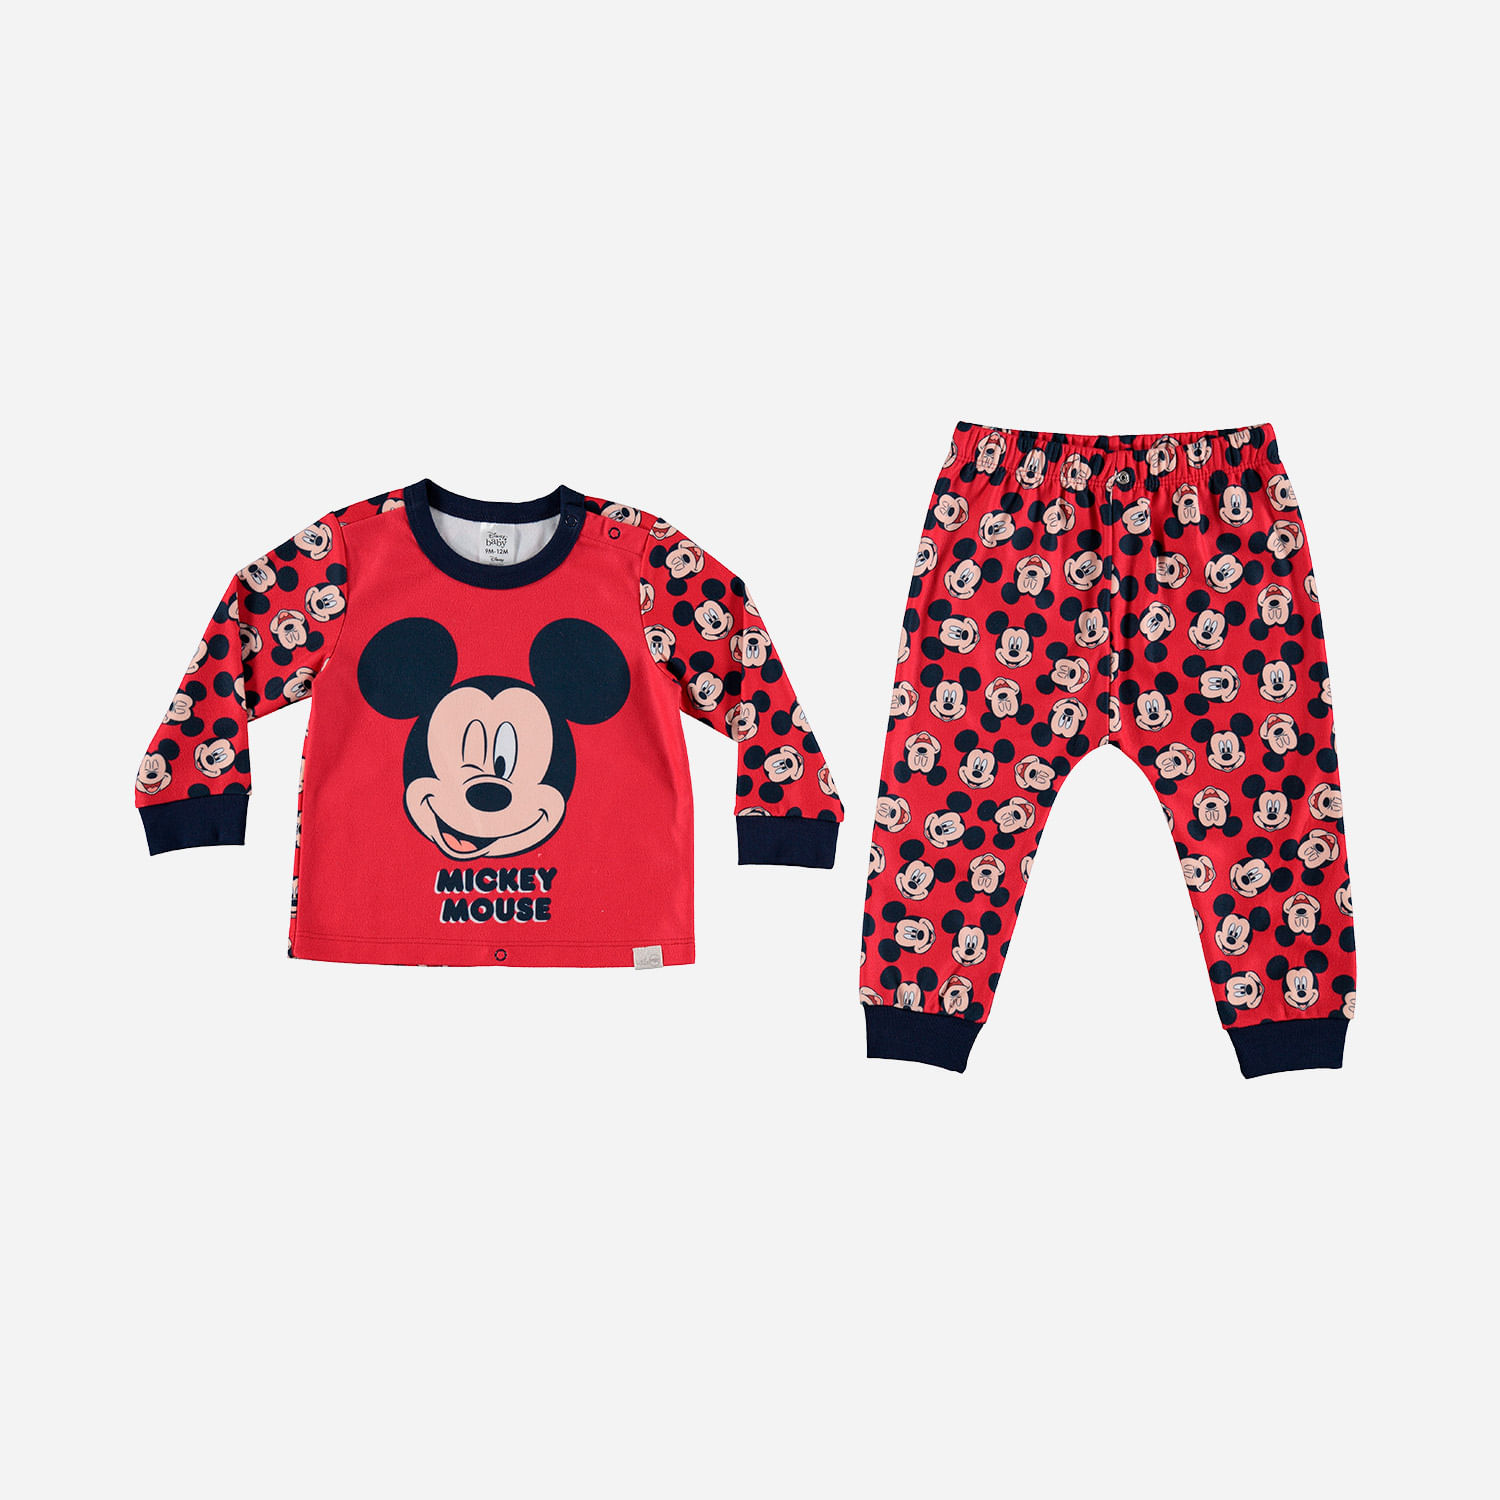 Pijamas para Niños Little MIC - Tienda MIC